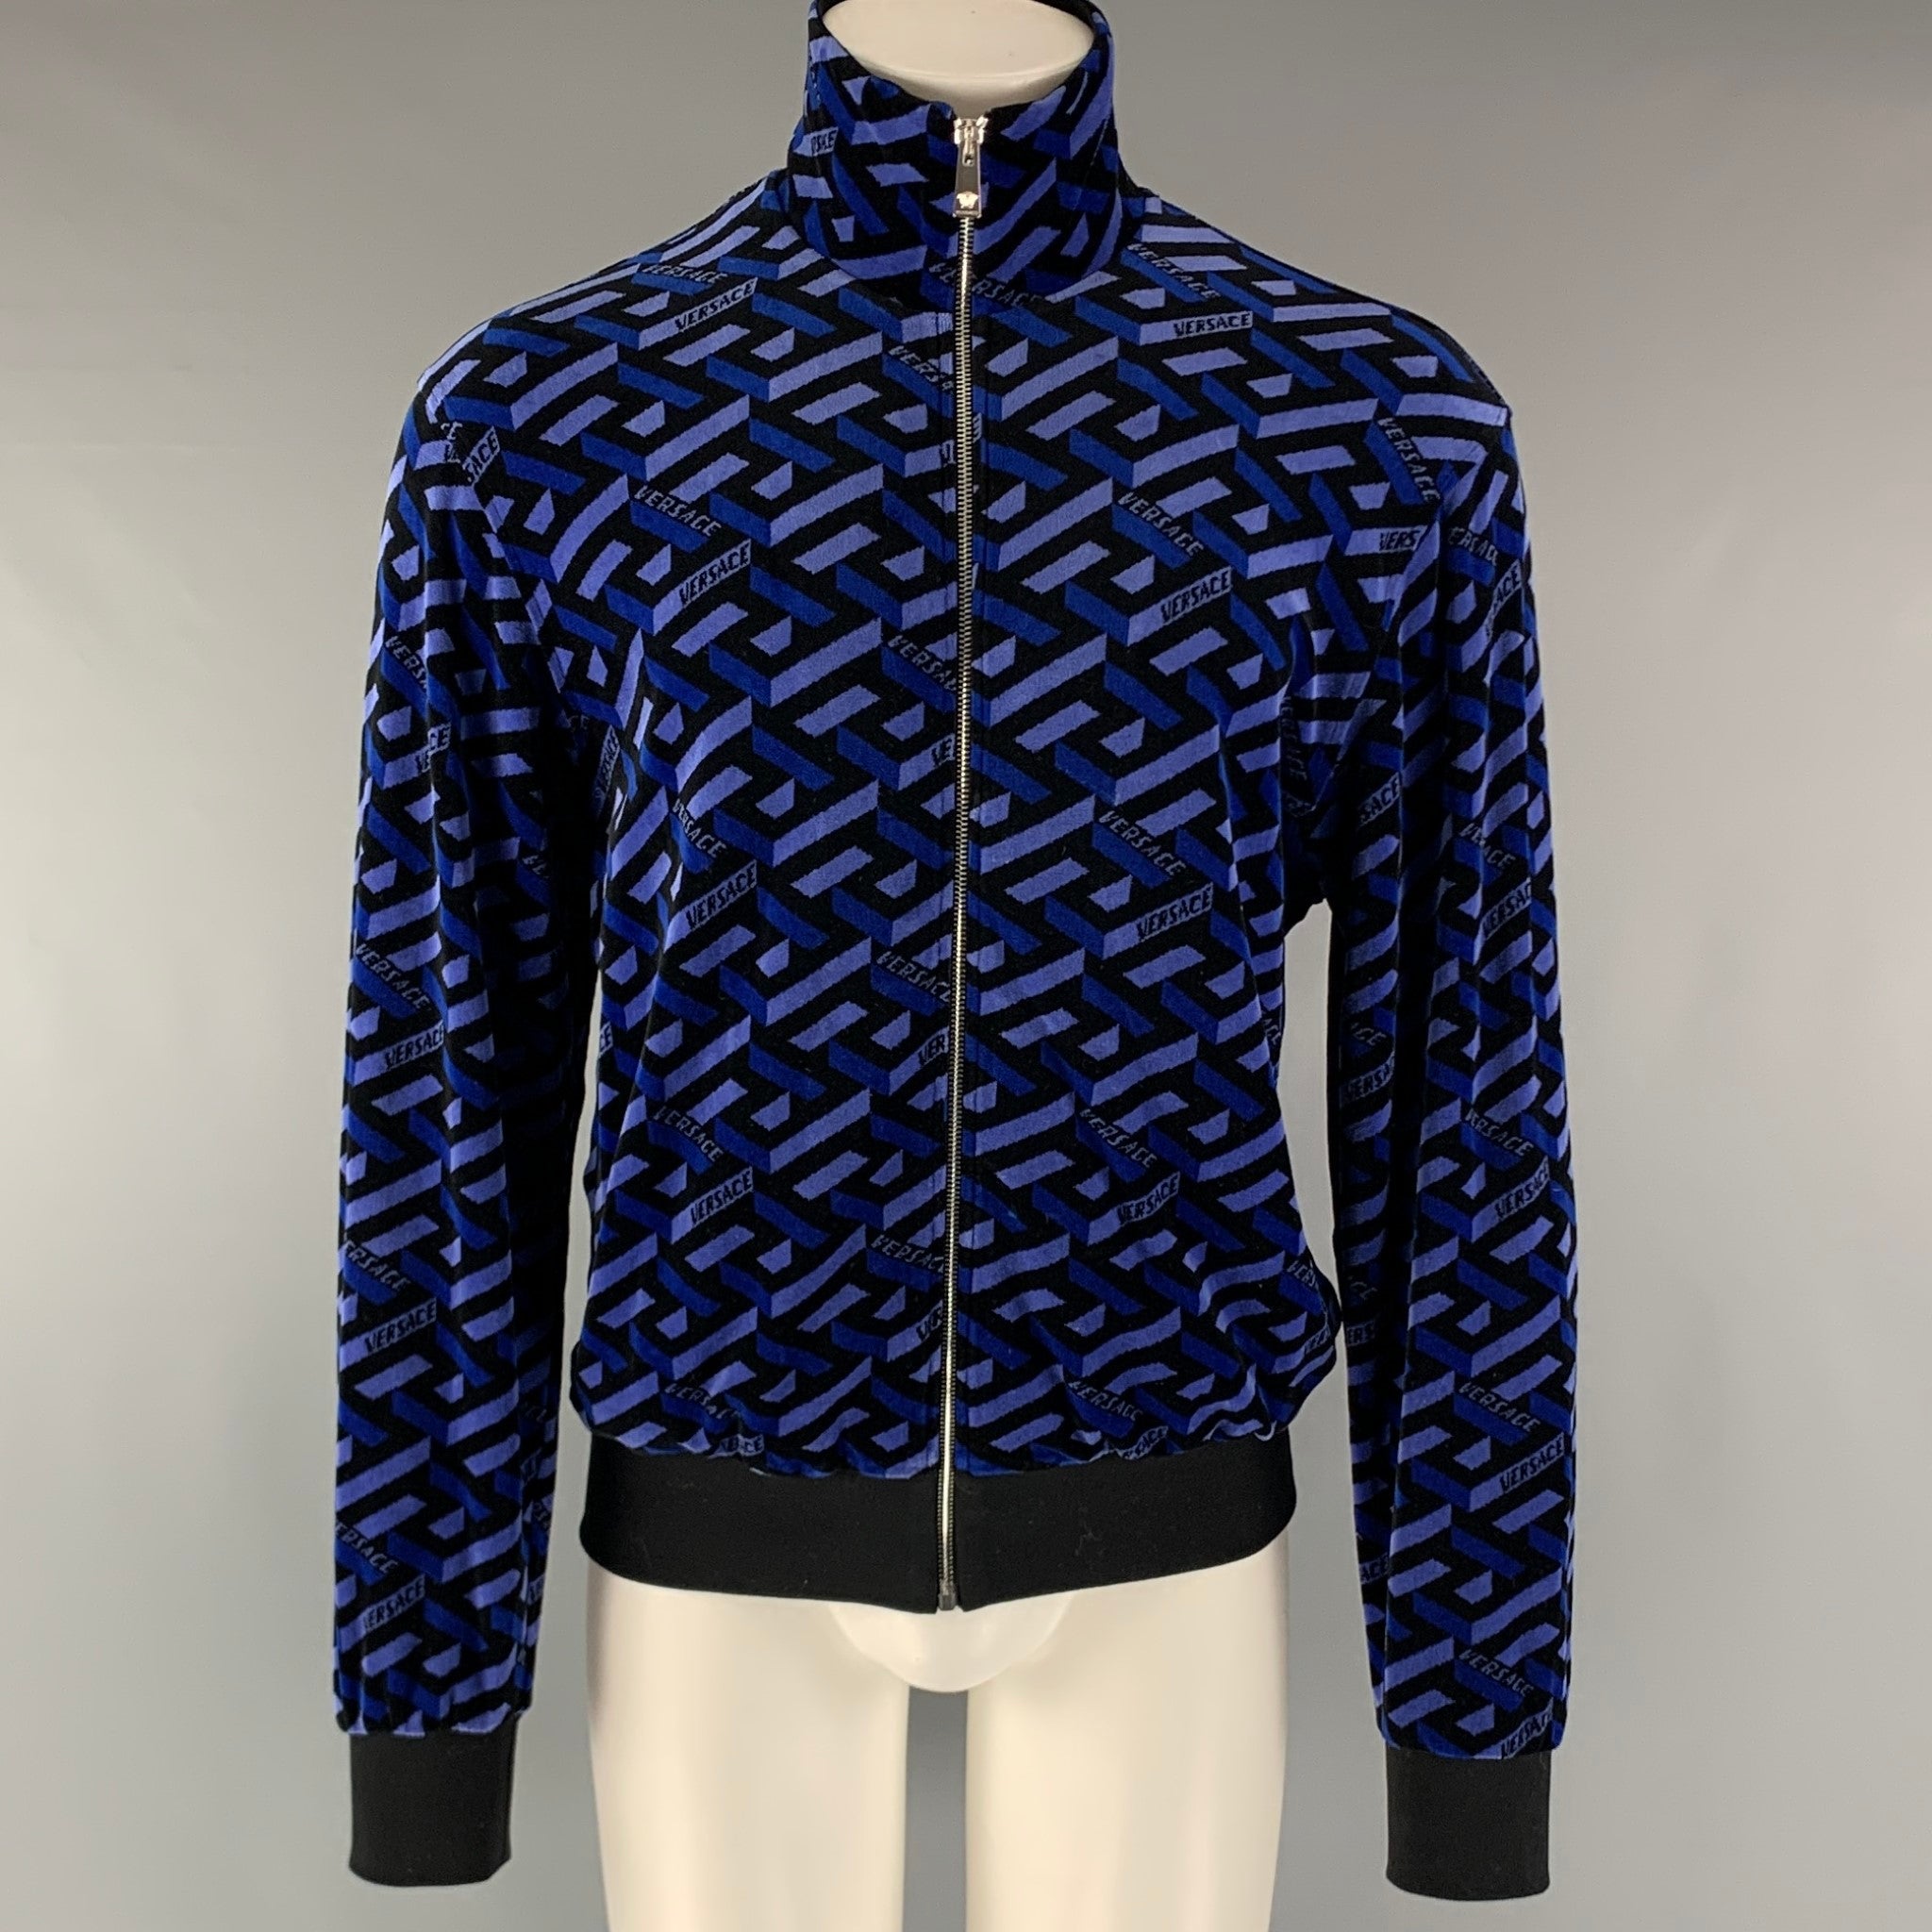 Bow Jacquard Fleece Jacket - Women - Ready-to-Wear